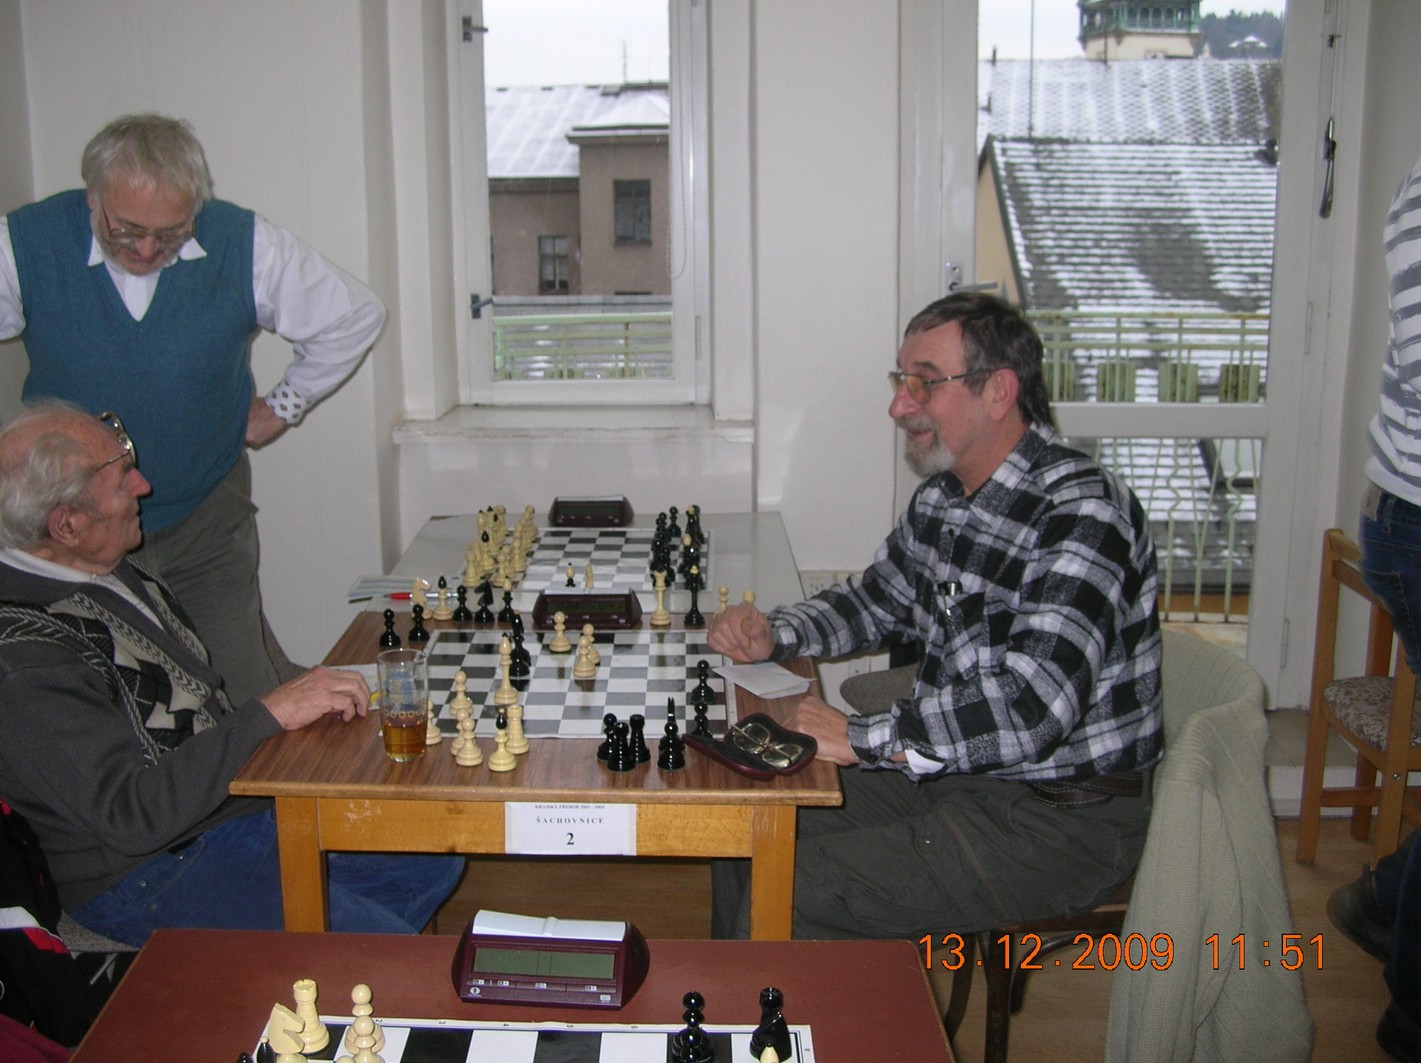 2.šachovnice